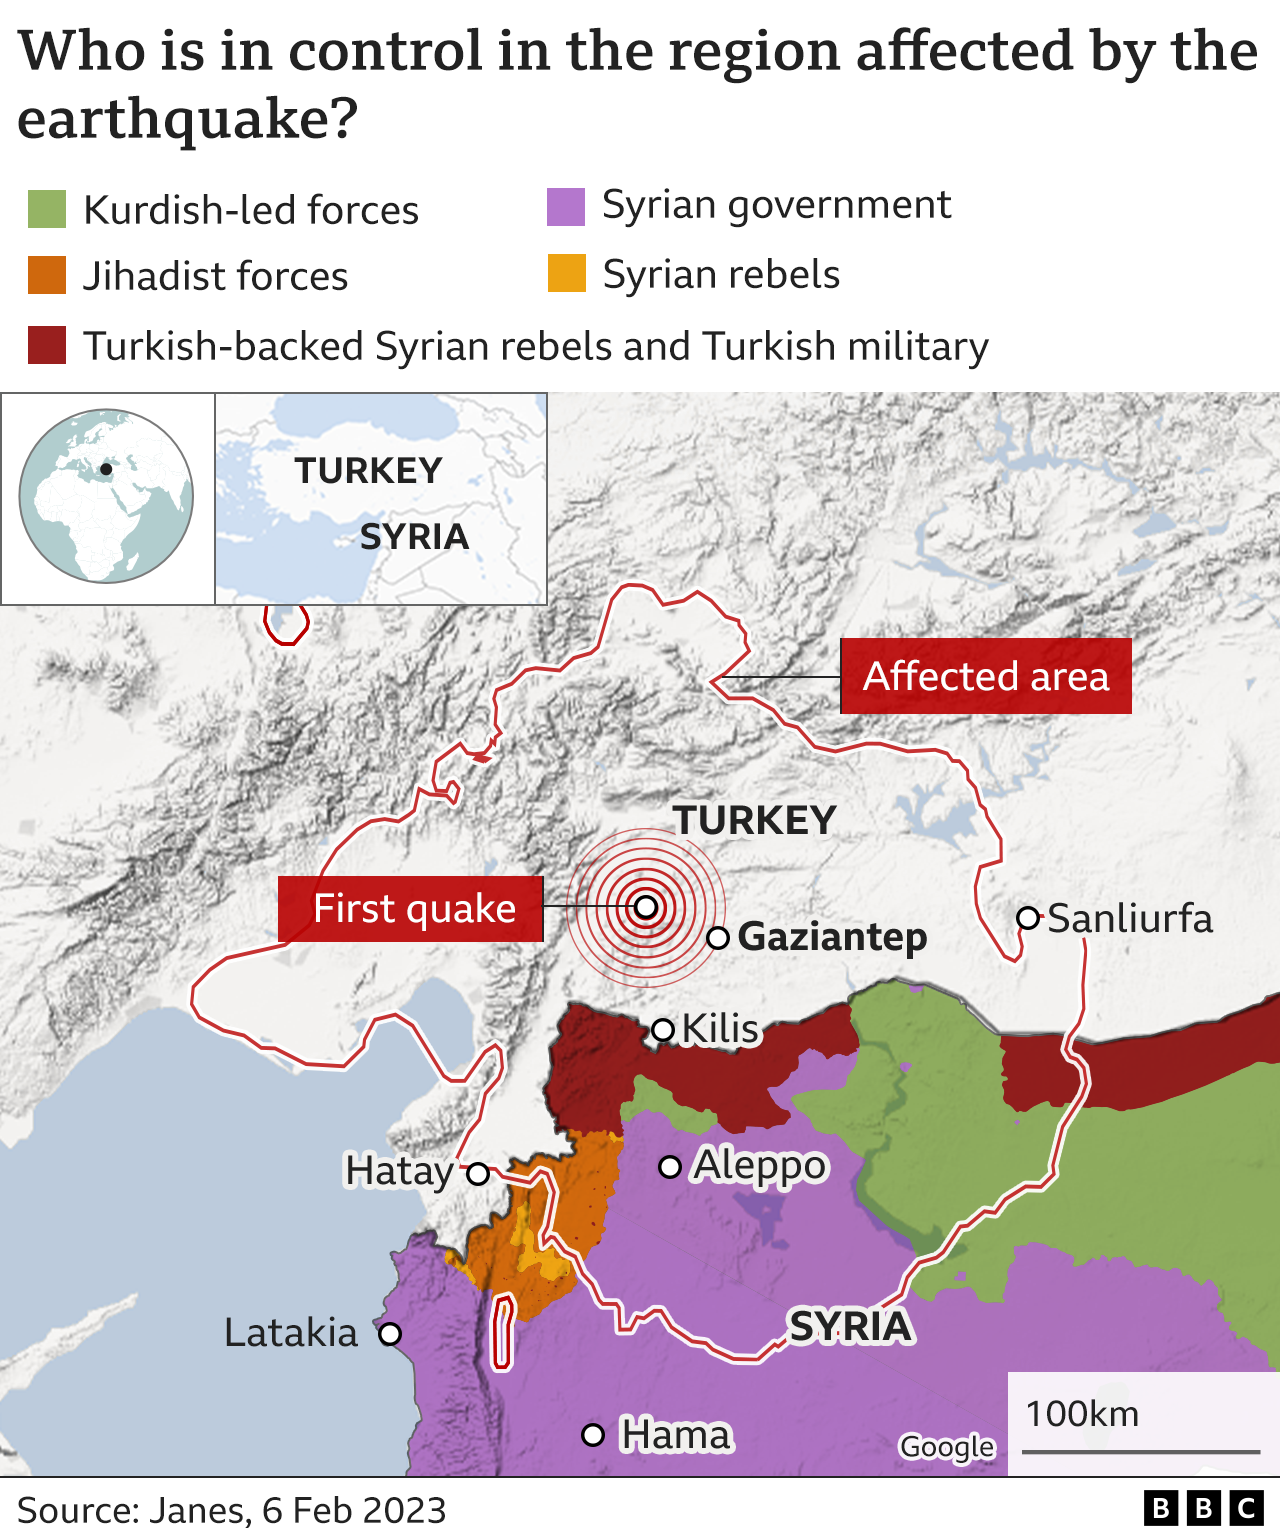 Mapa de control de Siria